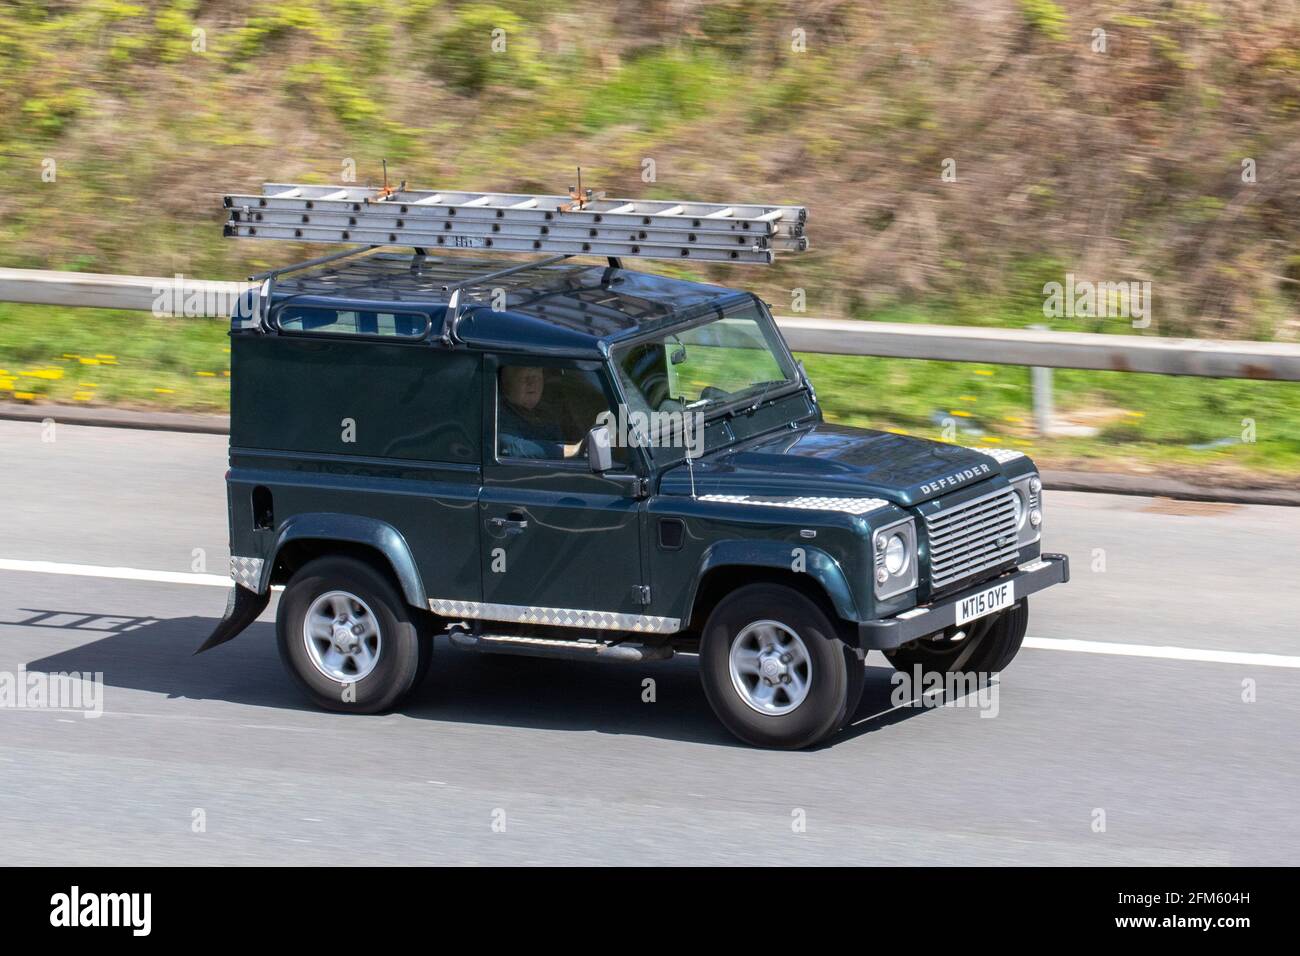 2015 Land Rover Defender 90 XS Hard Top; Fahrzeugverkehr, Fahrzeuge bewegen, Autos, Fahrzeug fahren auf britischen Straßen, Motoren, Fahren auf der Autobahn M6 Autobahn UK Straßennetz Stockfoto